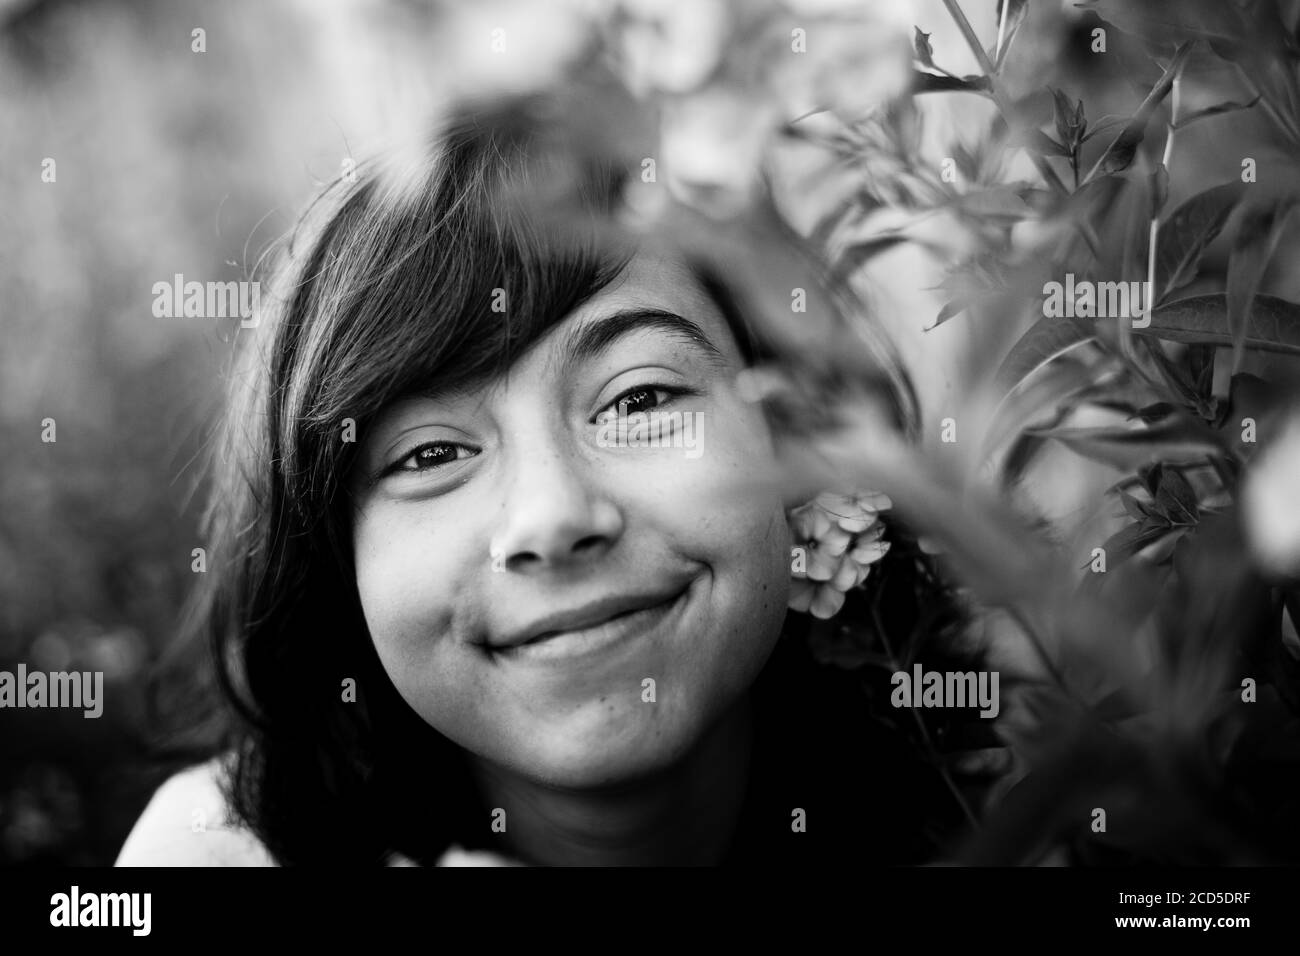 Schwarz-Weiß-Porträt von Teenager-Mädchen im Garten. Stockfoto